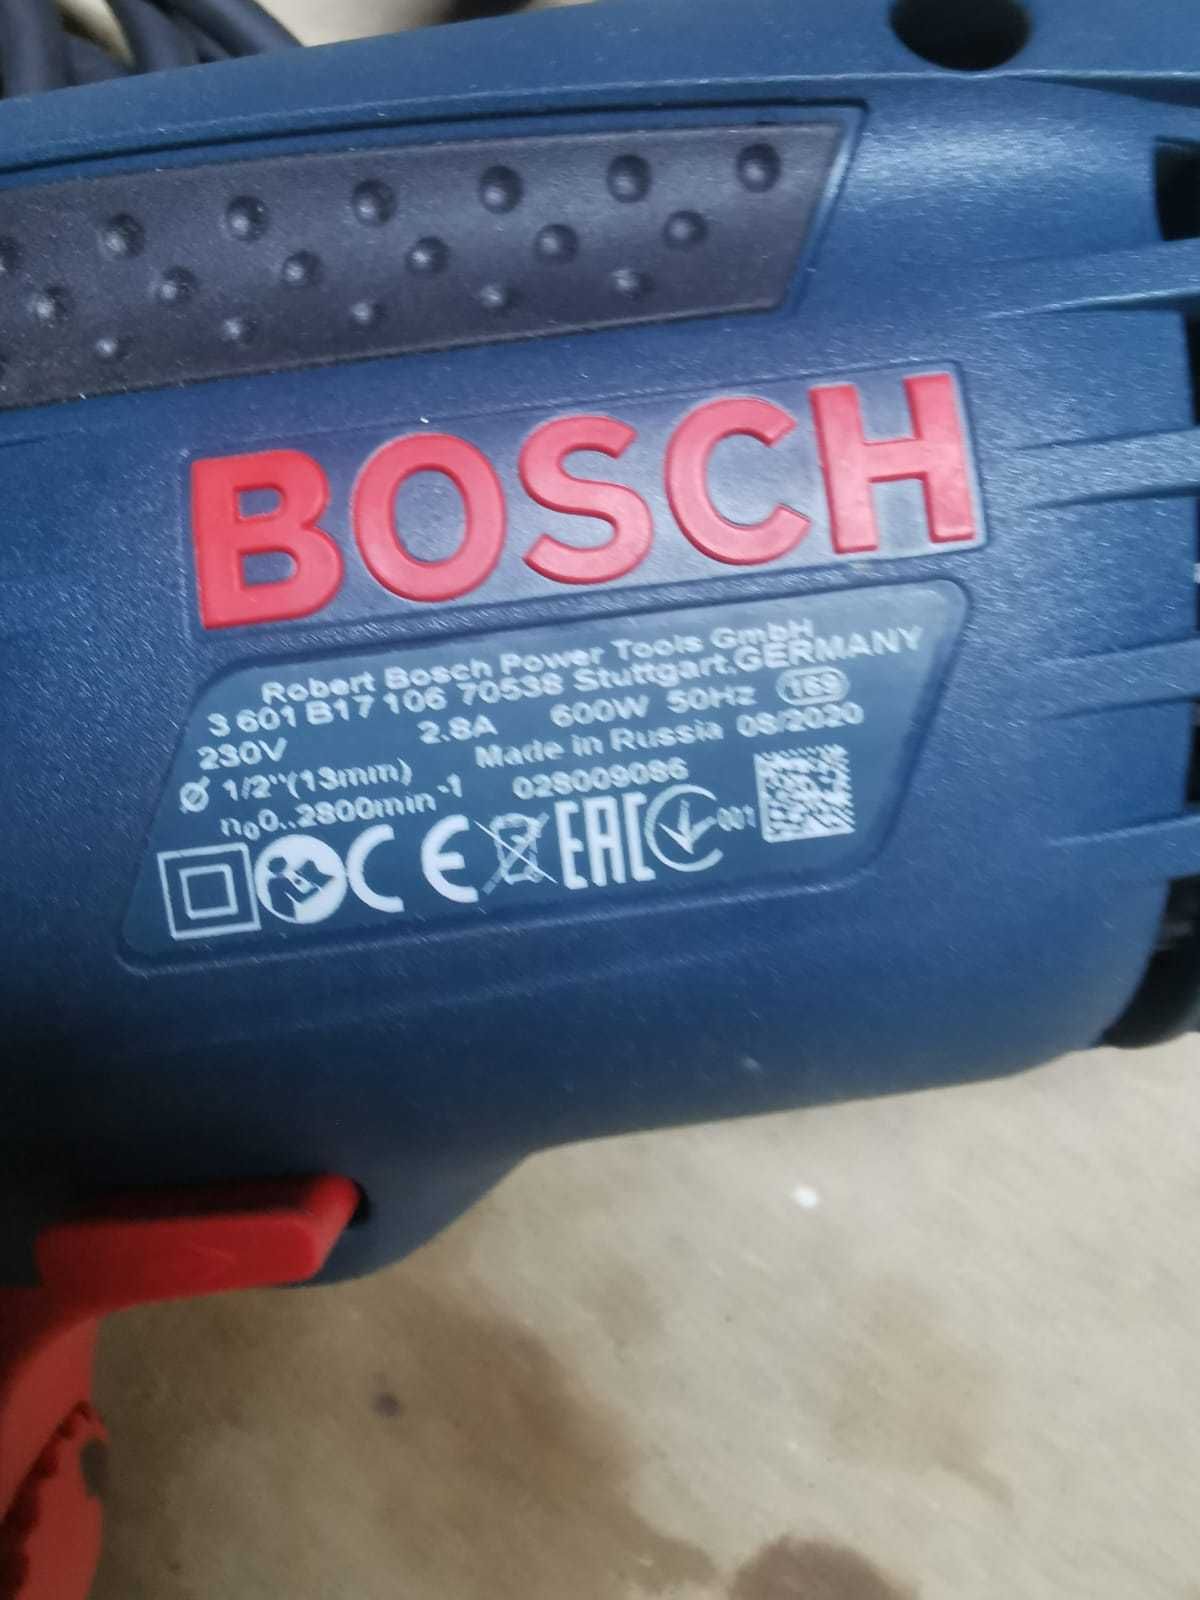 Berbequim da marca Bosch